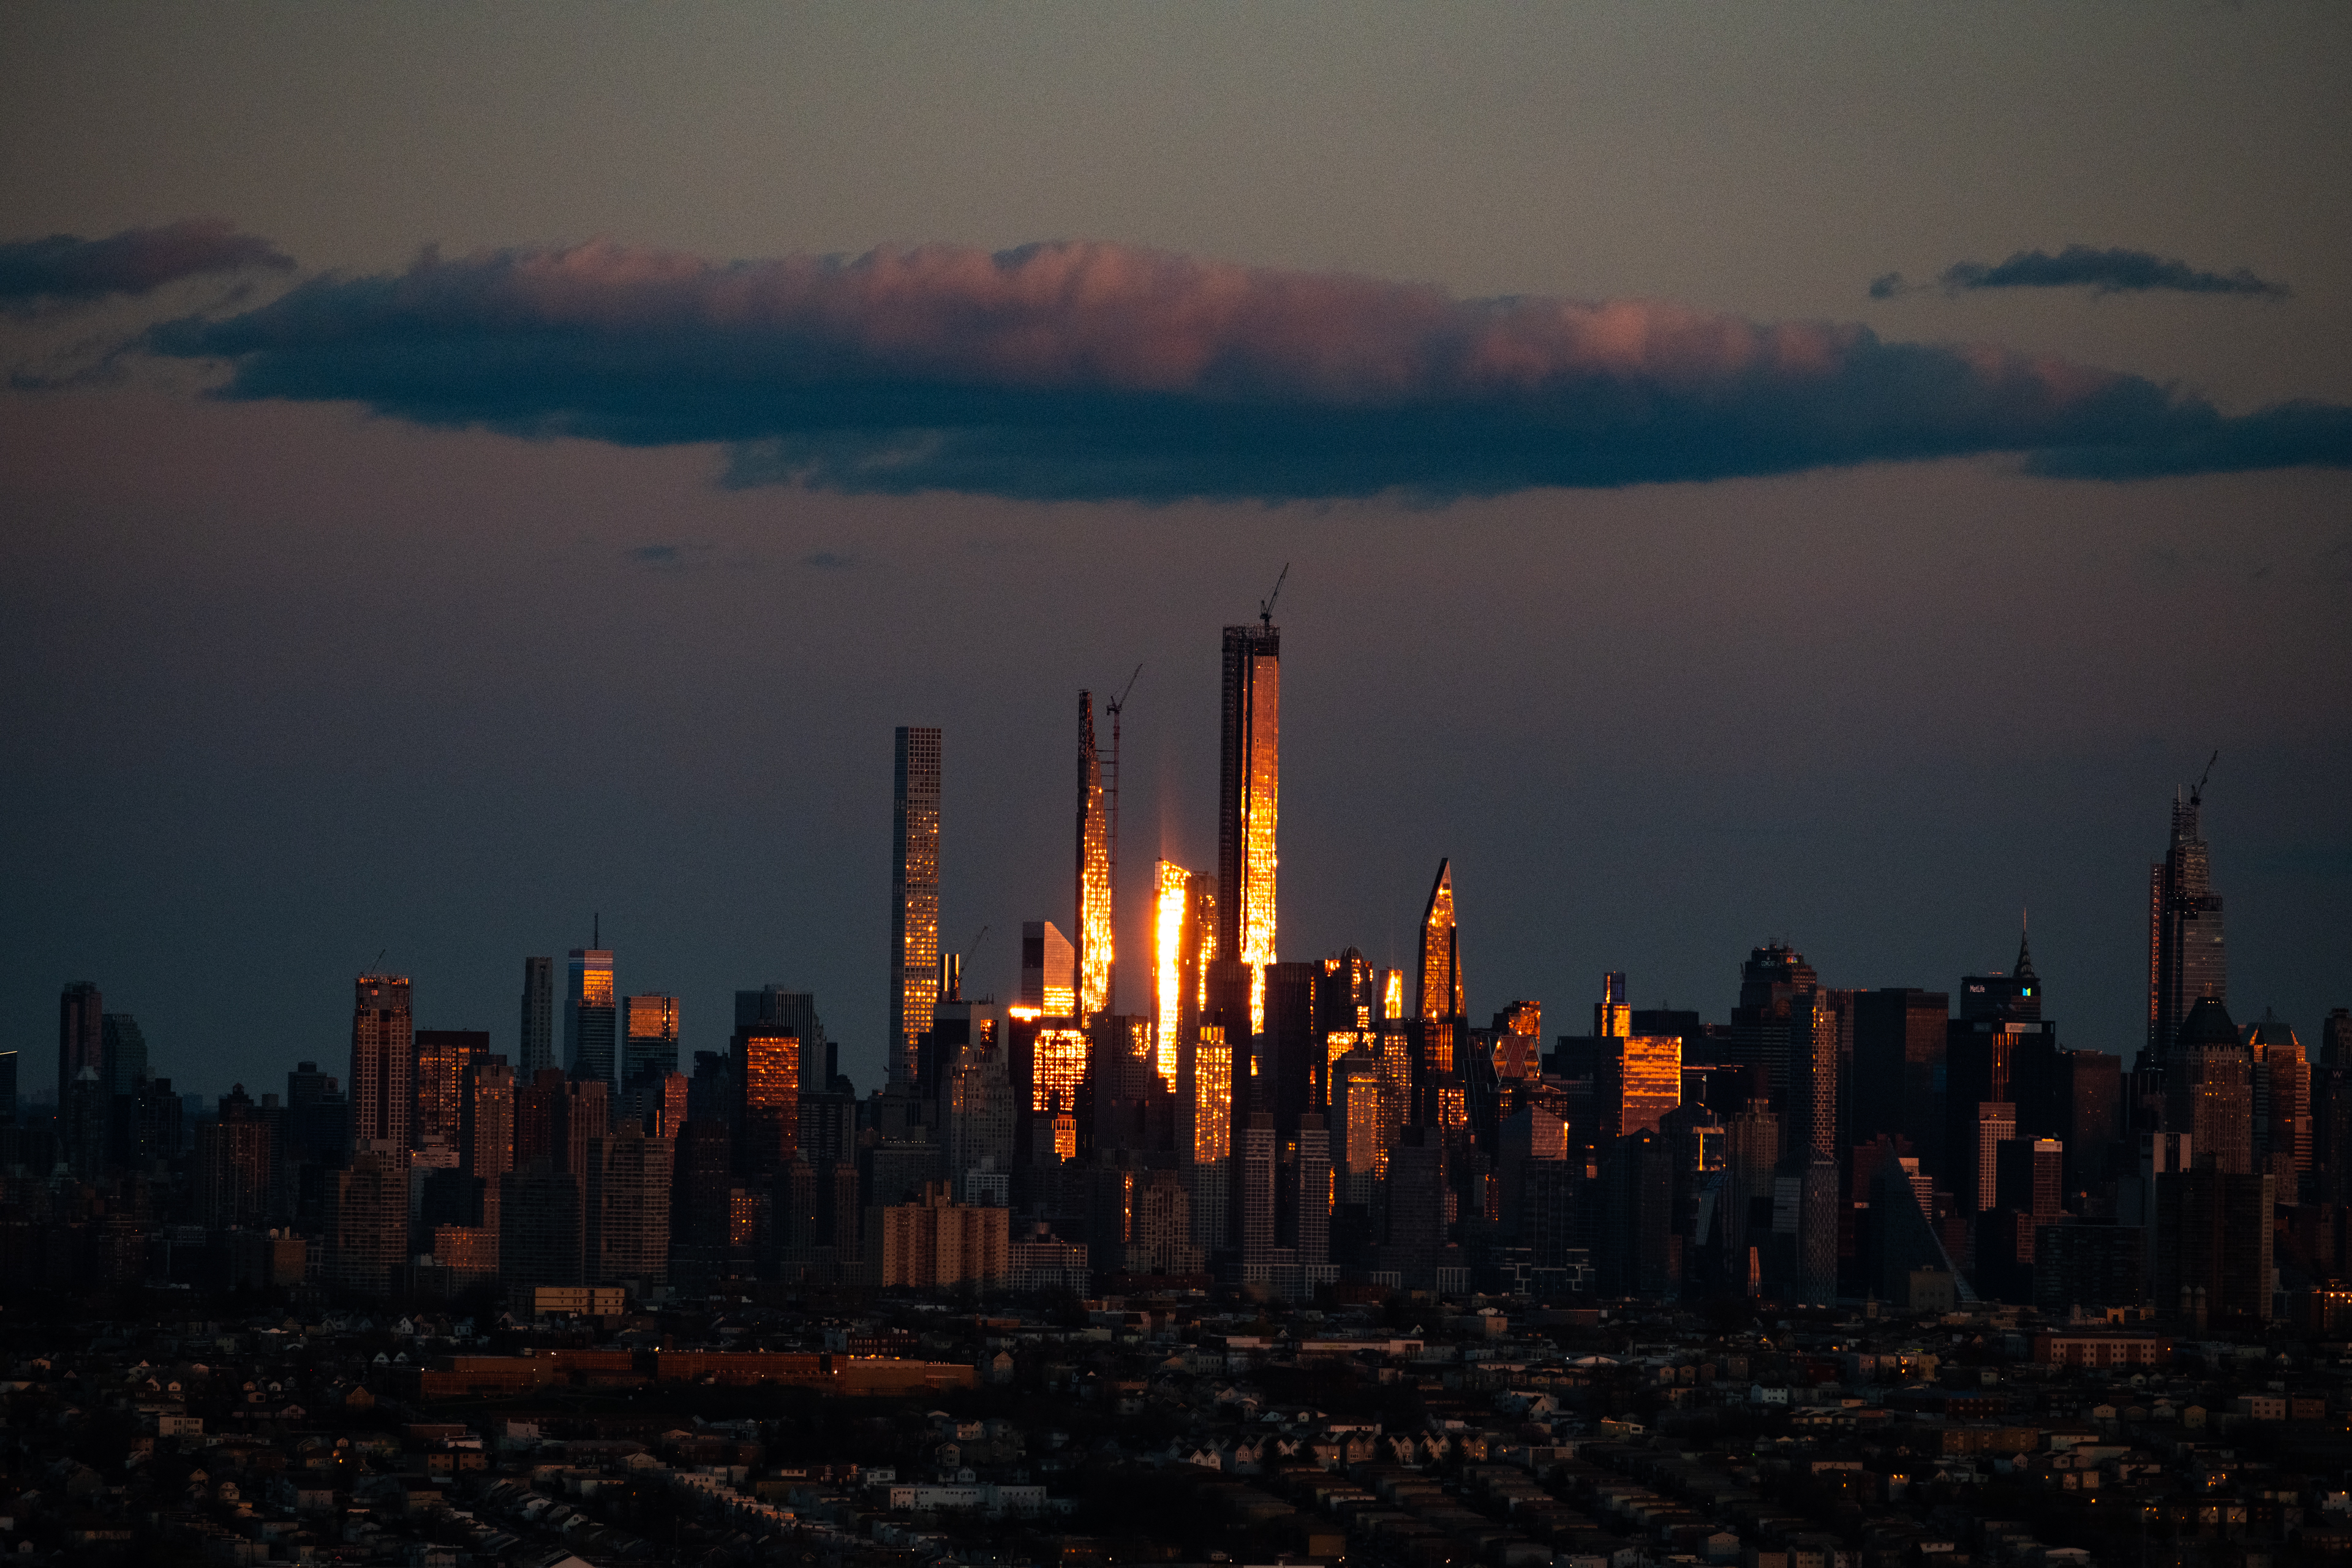 Stephen Wilkes: New York City Lockdown by Air